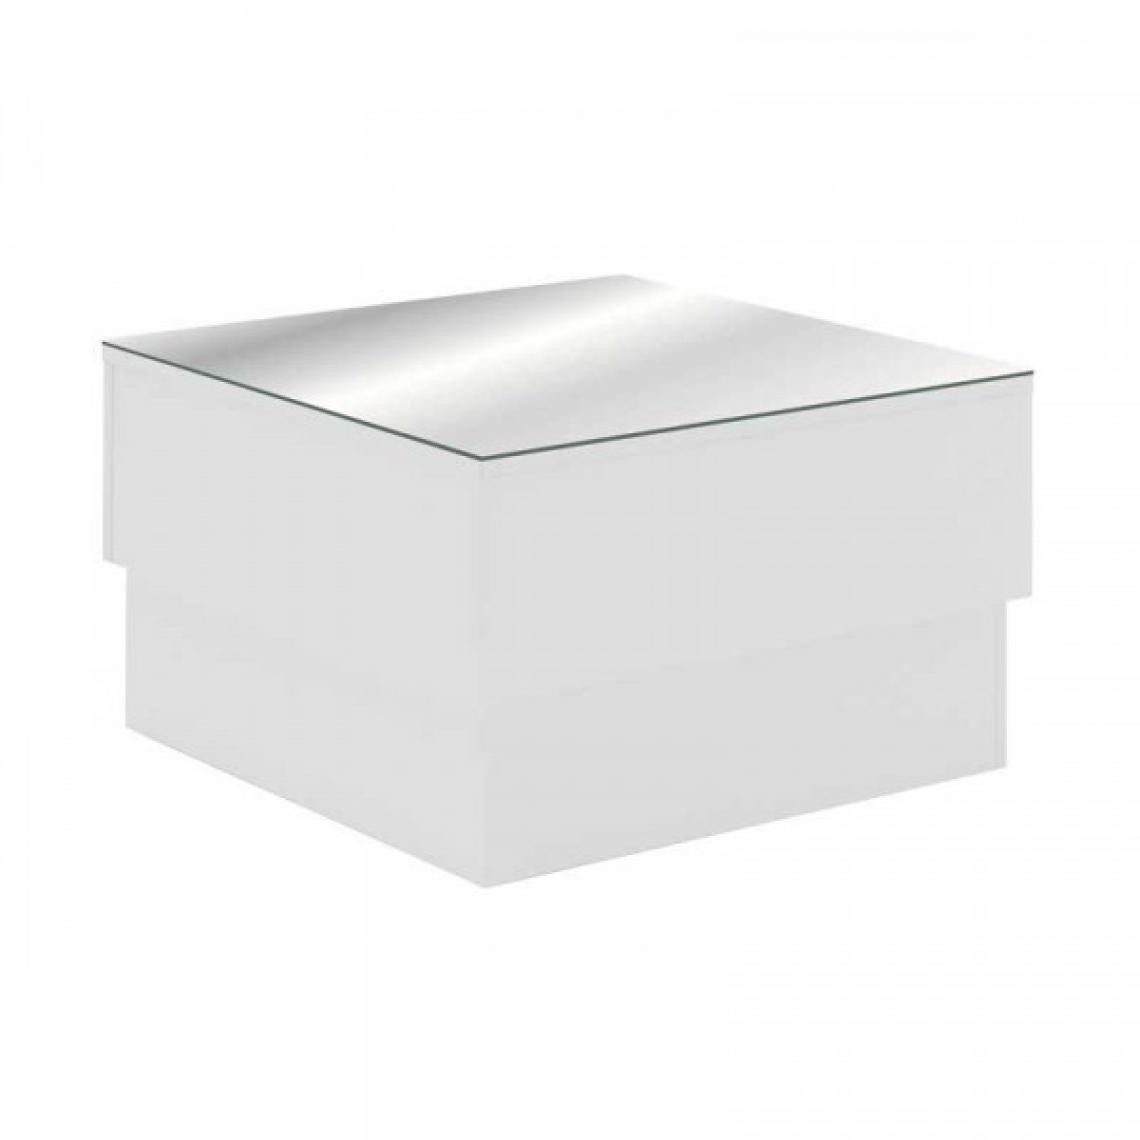 Dansmamaison - Table basse carrée Verre Miroir/Bois Blanc - TYPAR - L 60 x l 60 x H 35 cm - Tables basses